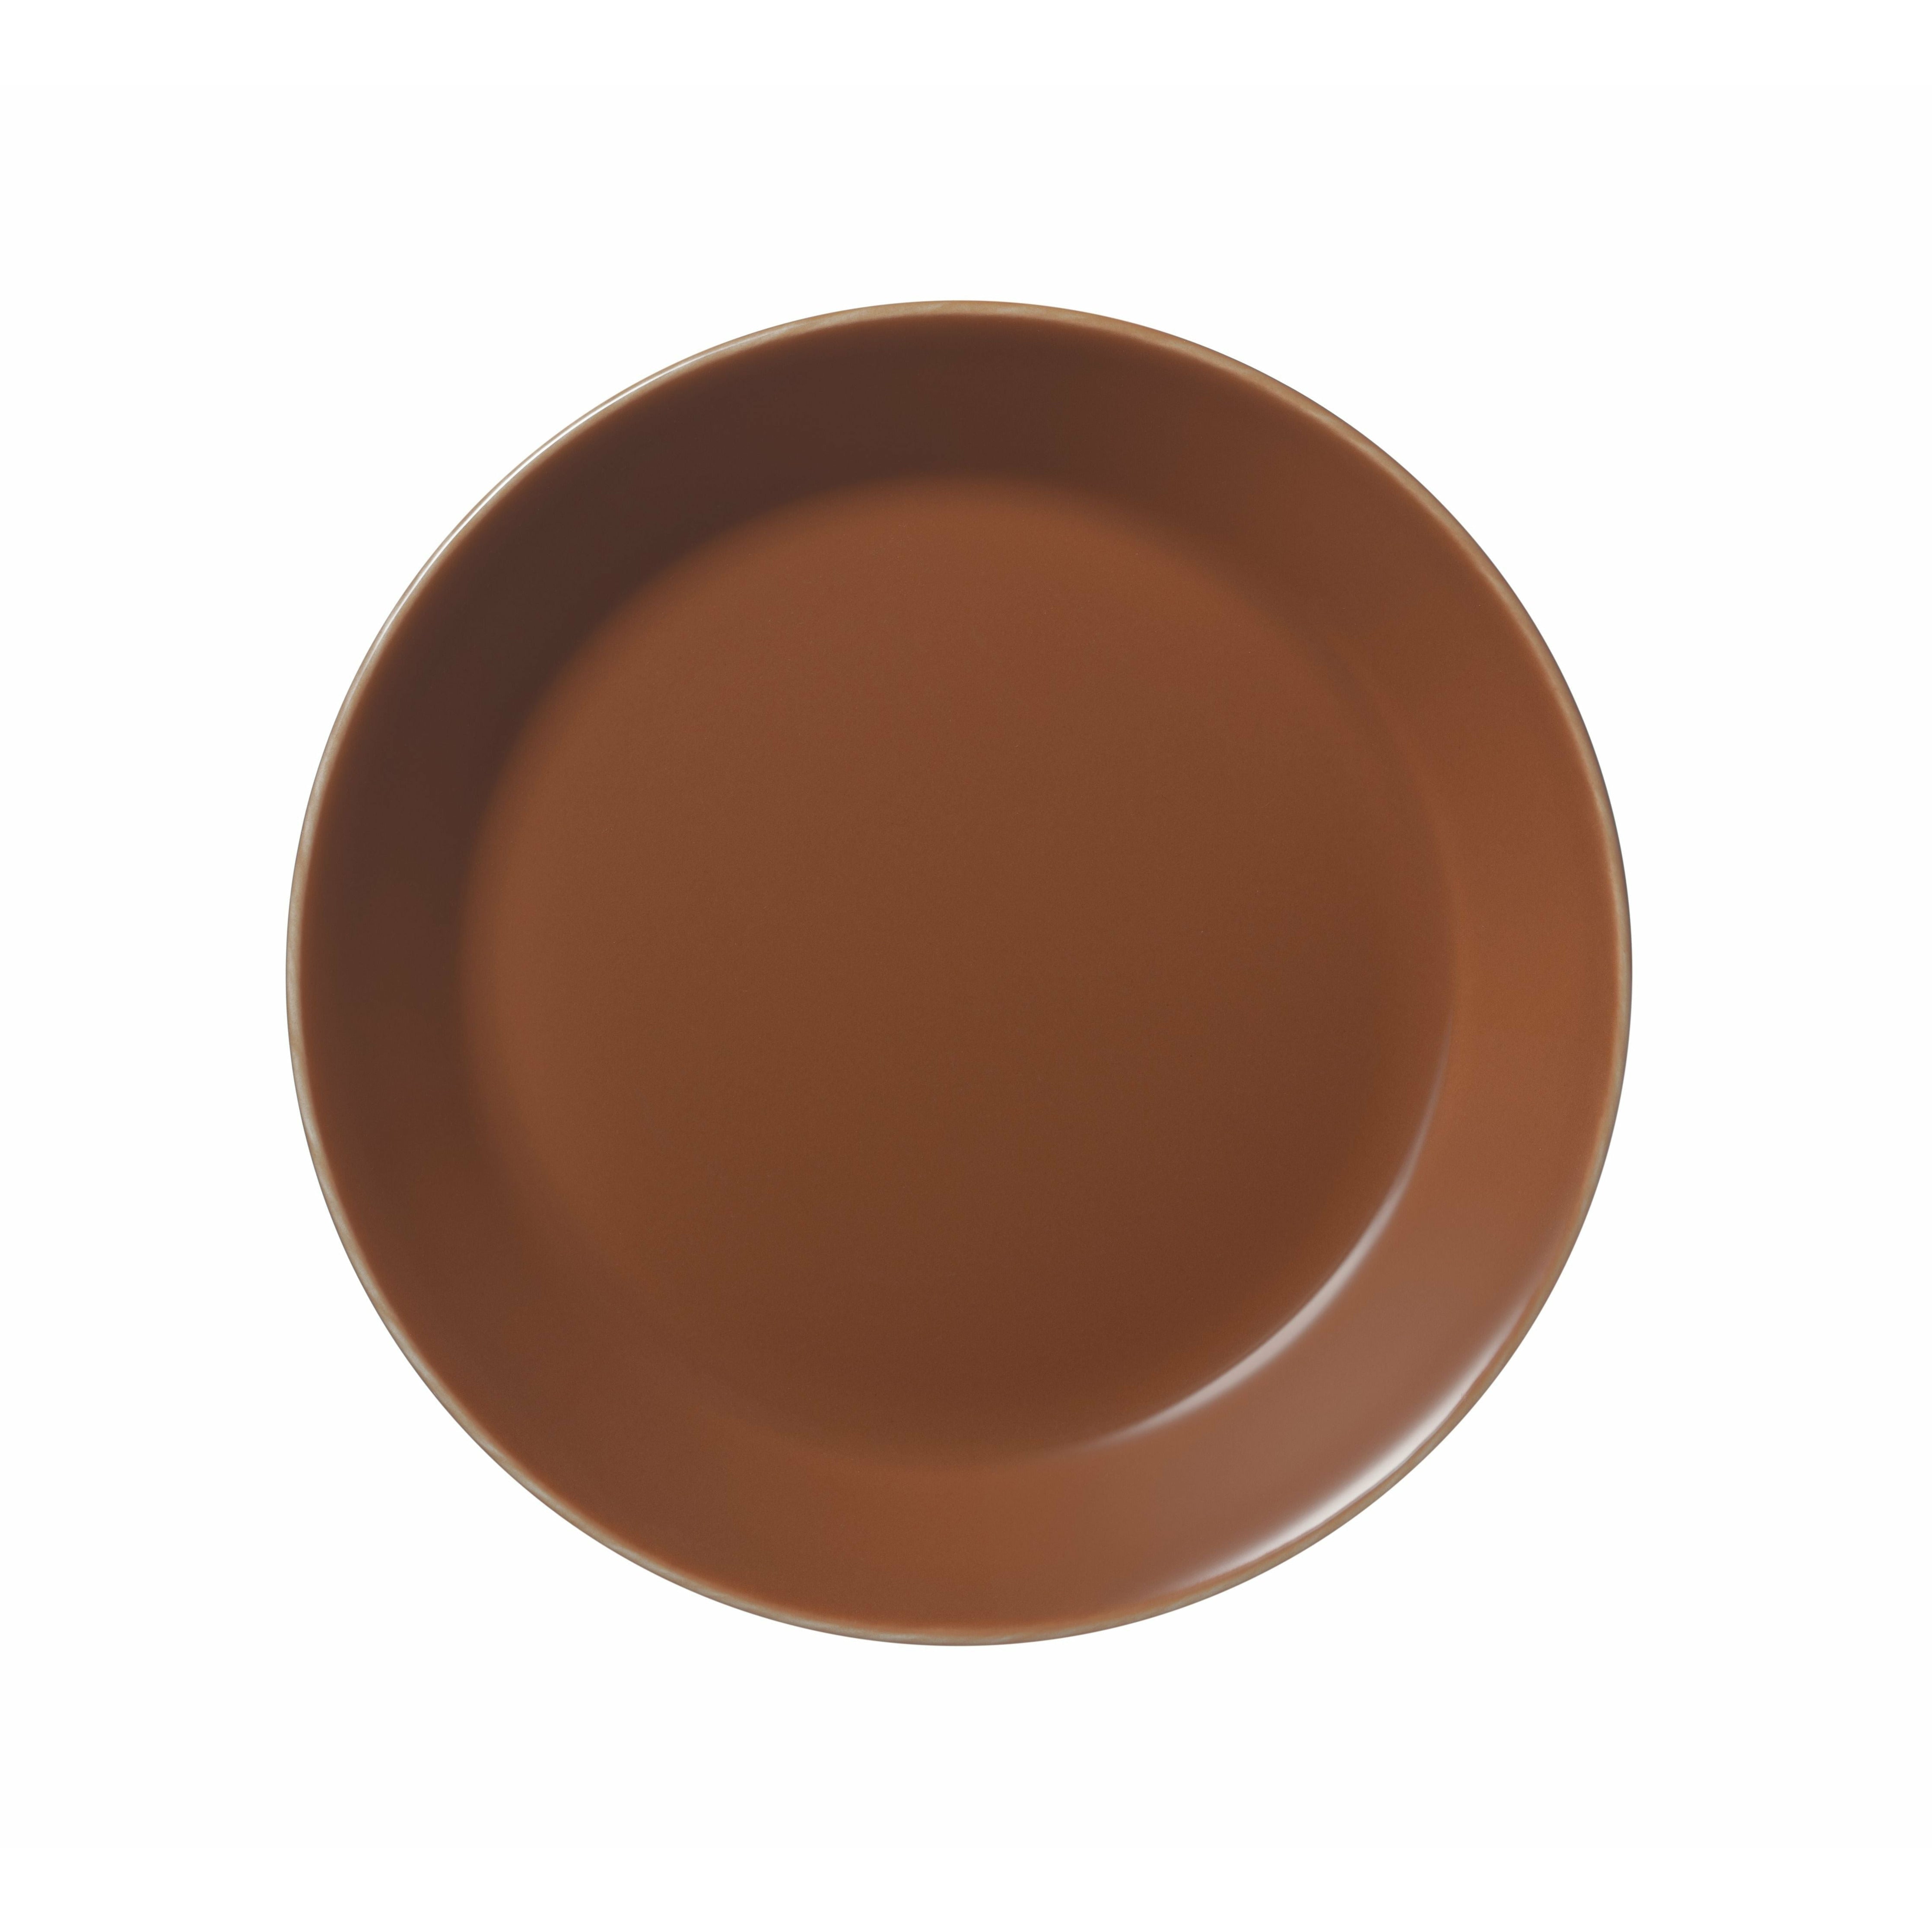 Iittala Teema Plate Flat 17cm, Vintage Brown